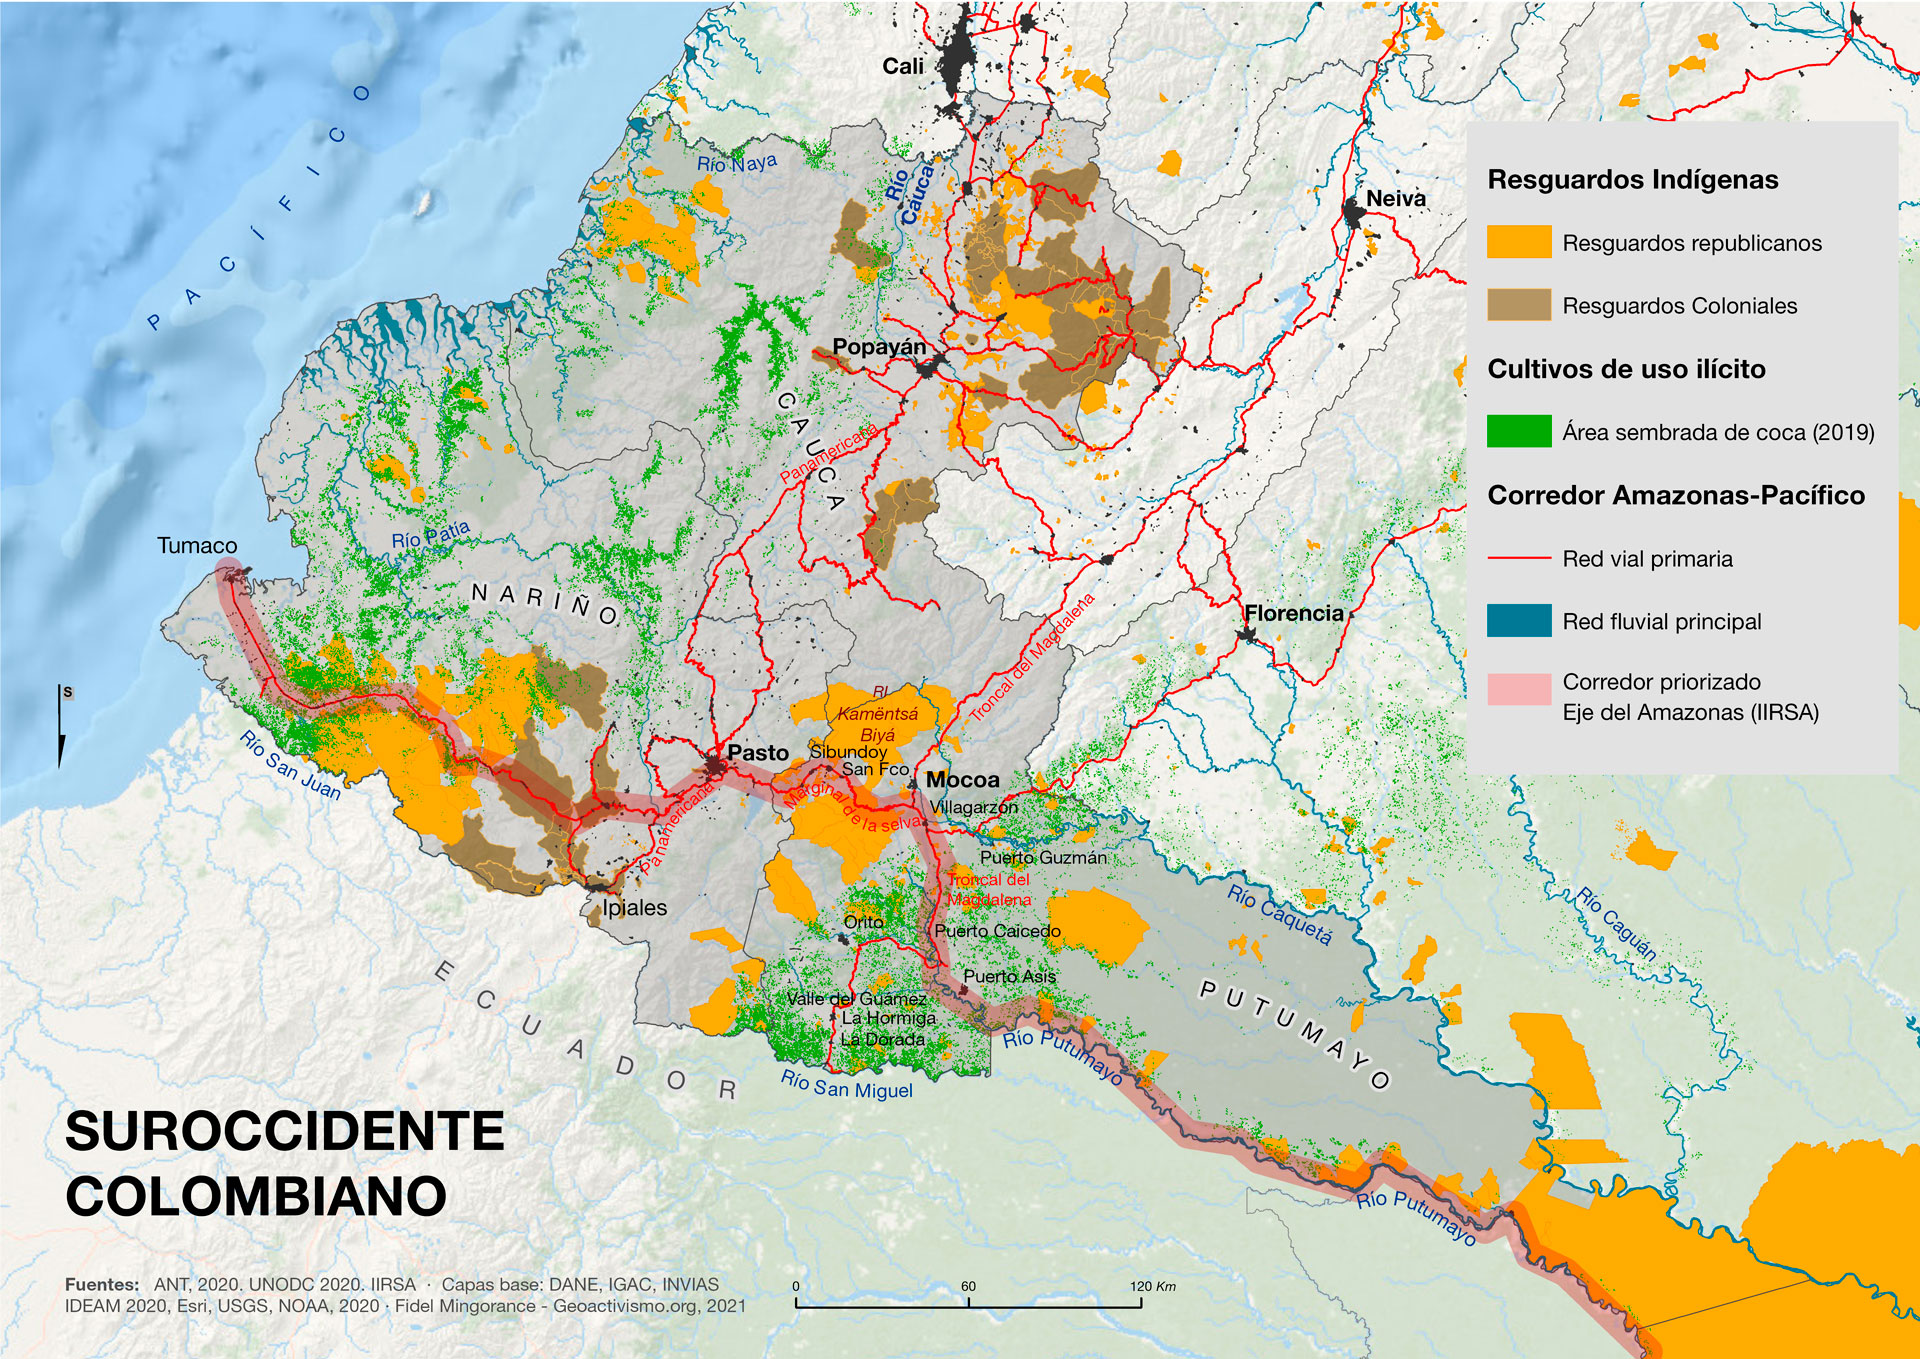 Territorialidades indígenas y cultivos de coca para el narcotráfico en el suroccidente colombiano (2000-2020)